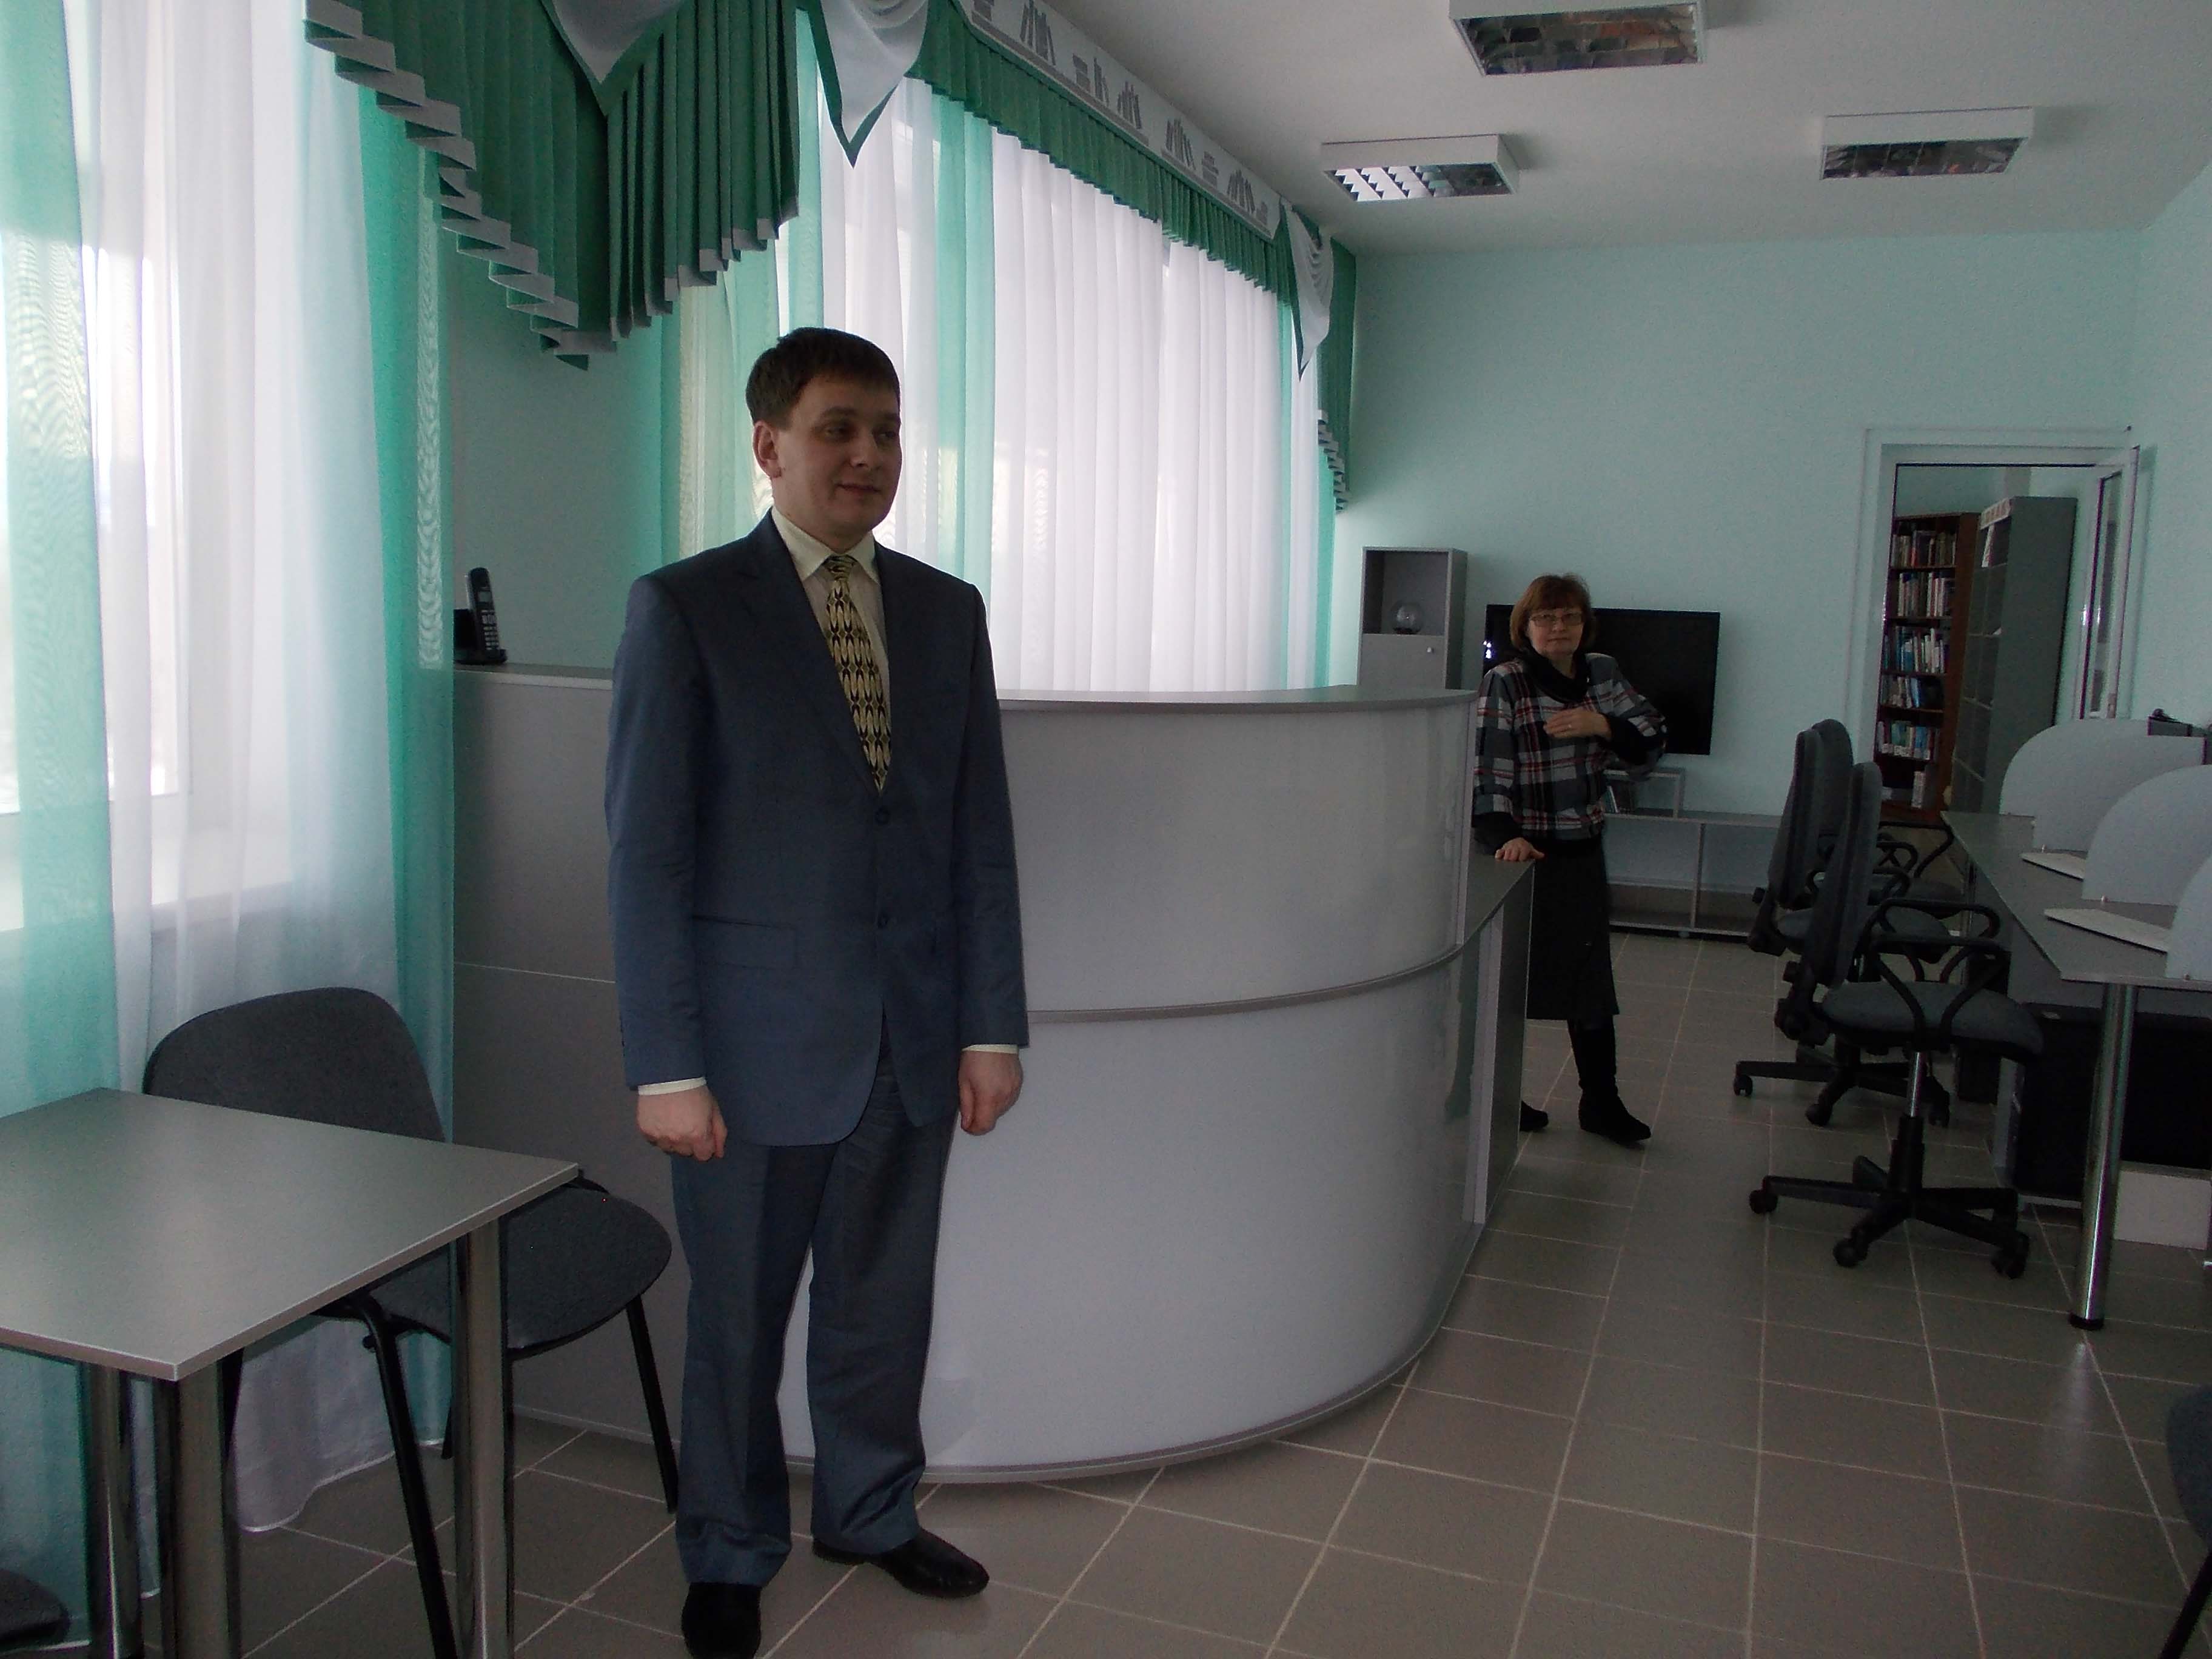 Глава Ленинск-Кузнецкого муниципального района Харитонов Алексей Виктолрович приветствует гостей модельной библиотеки.